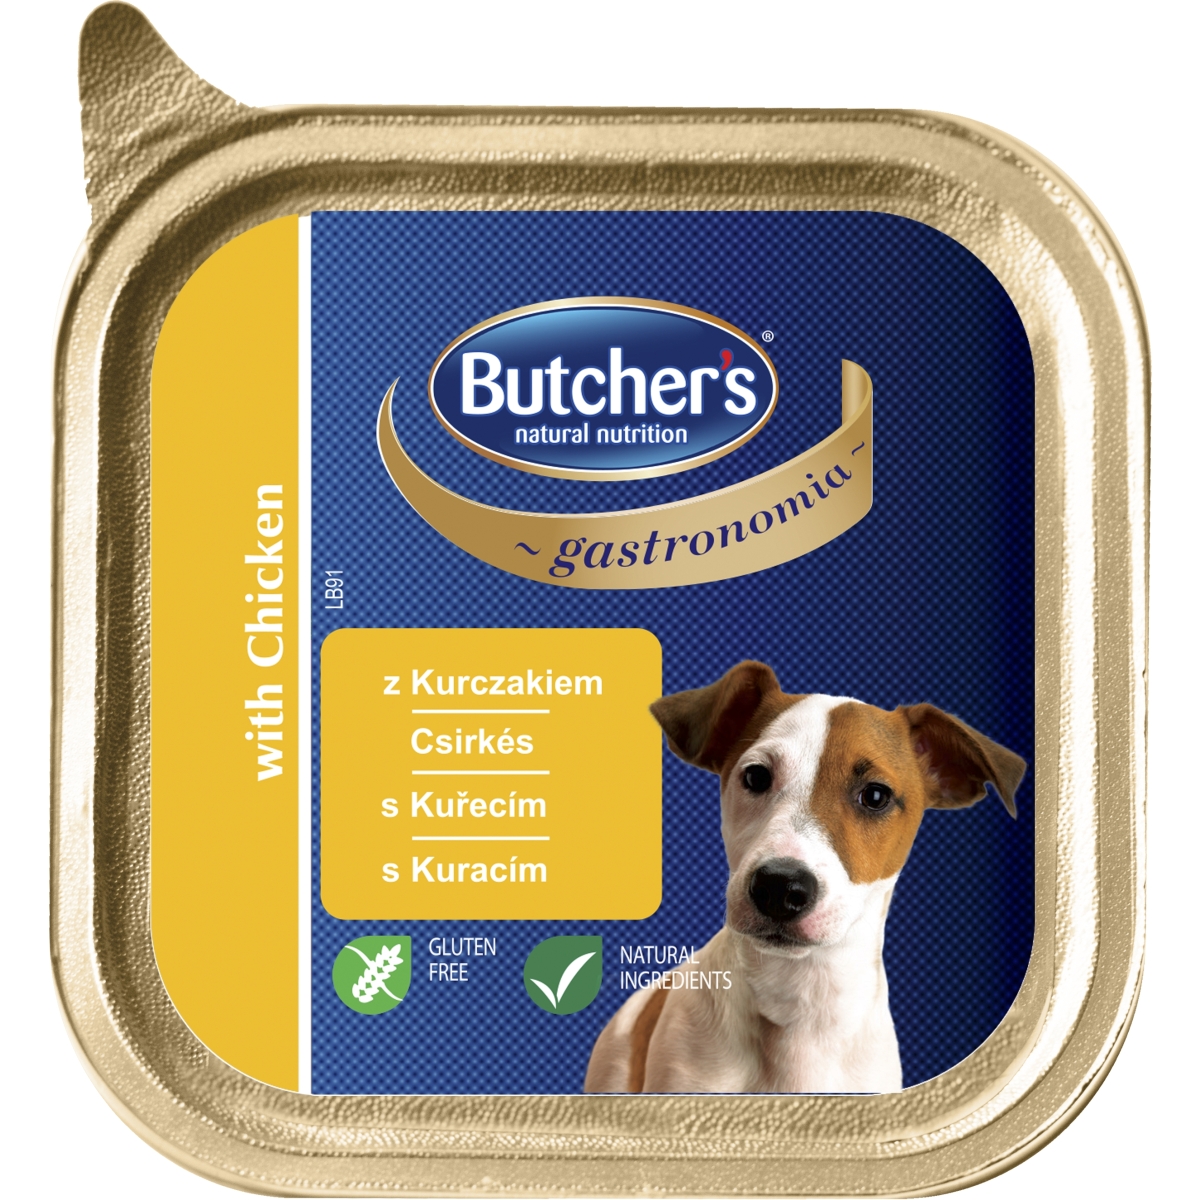 Butcher's Gastro vištienos paštetas šunims, 150 g